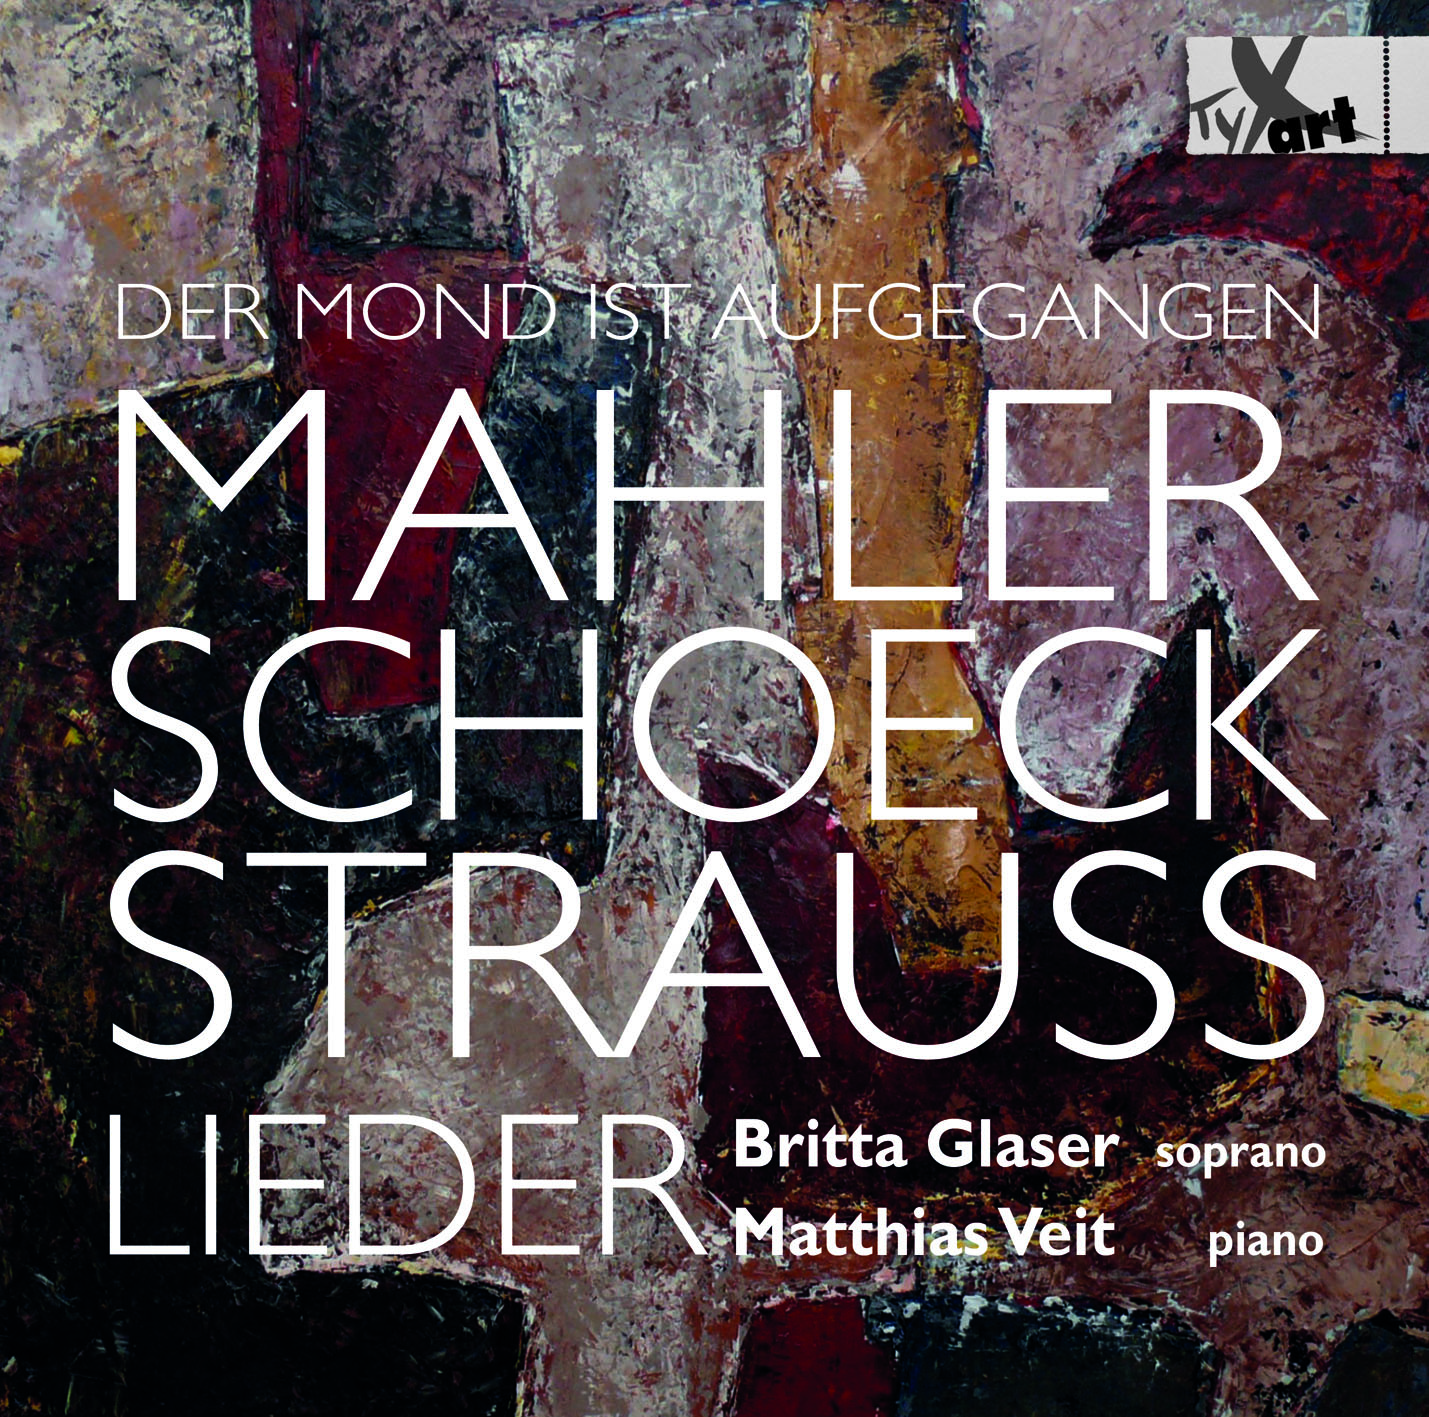 Lieder by Mahler, Schoeck, Straus - Glaser and Veit